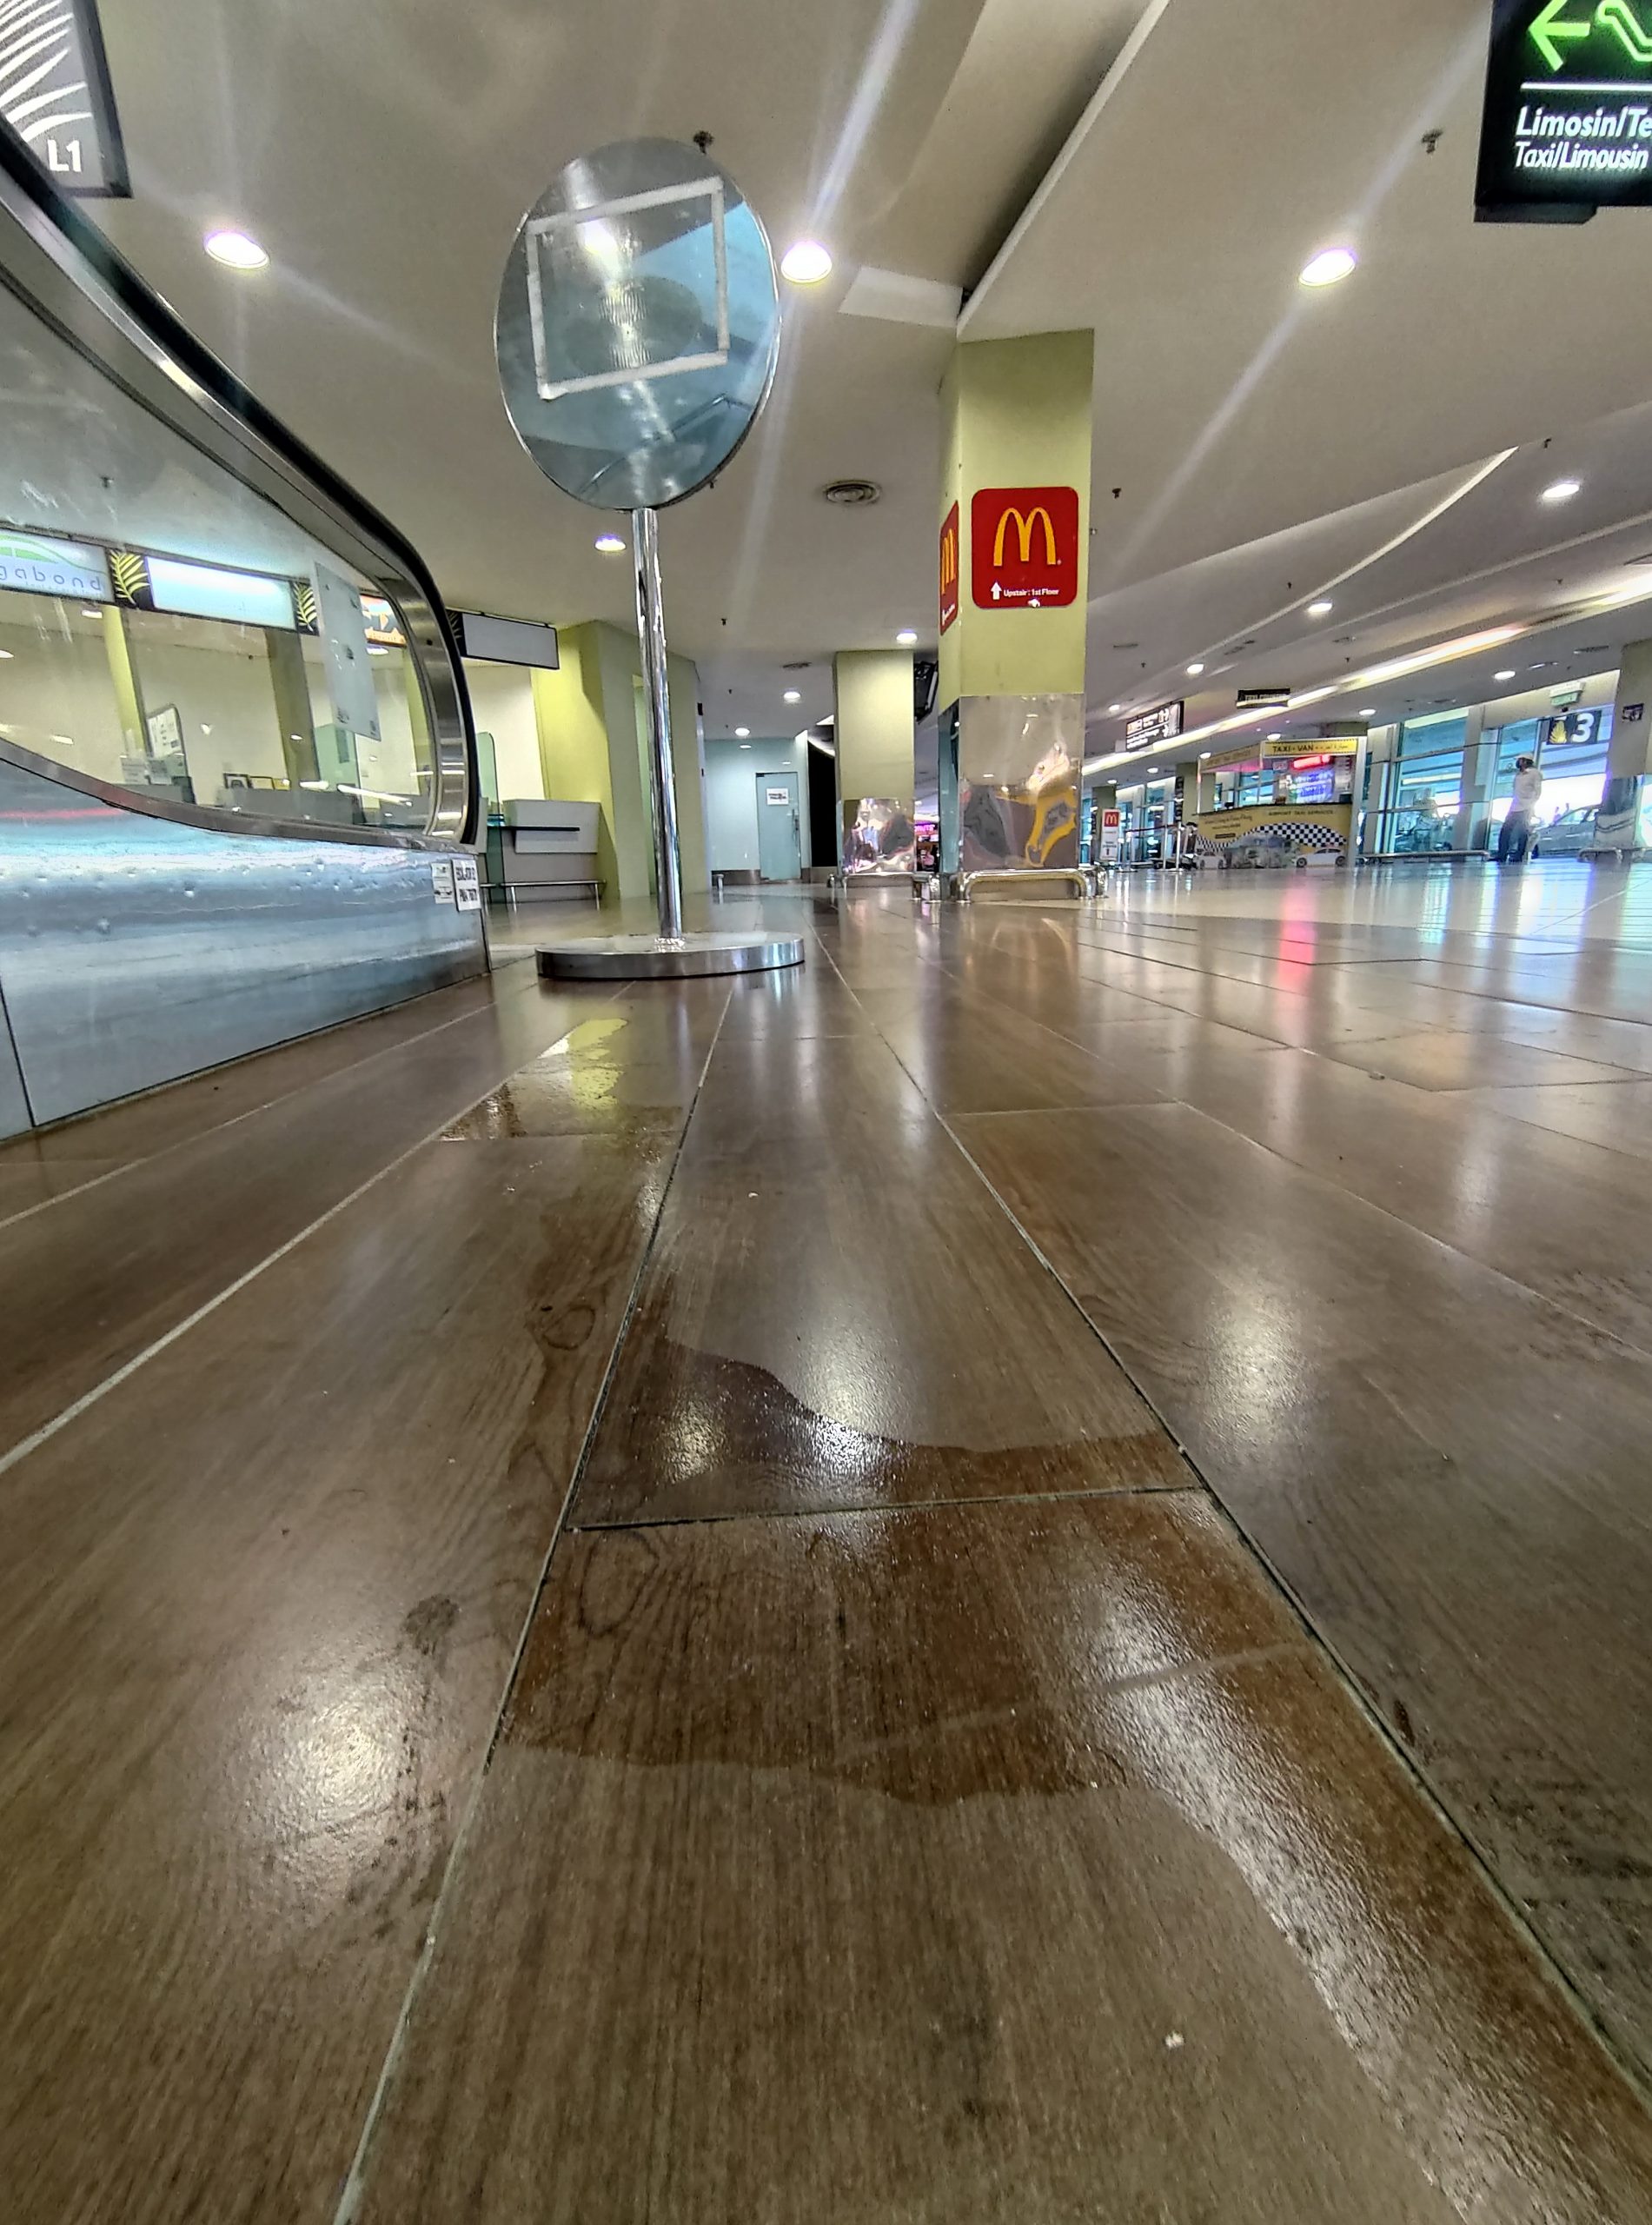 （大北马）槟机场卫生有改善，垃圾污渍很快被清理